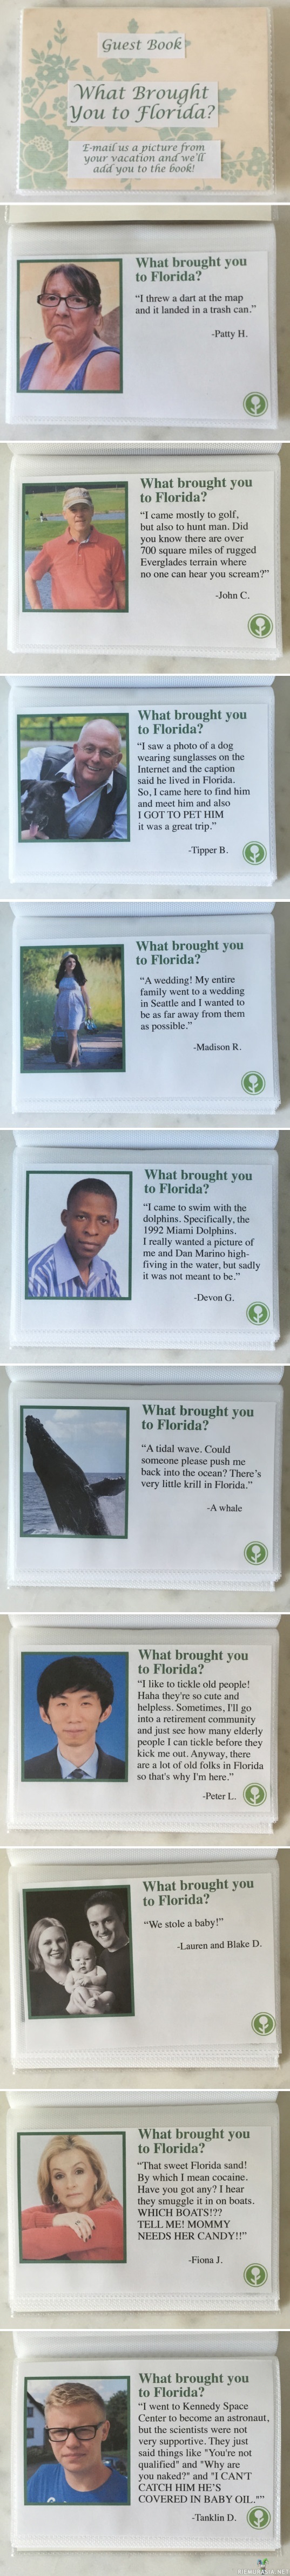 Miksi tulit Floridaan